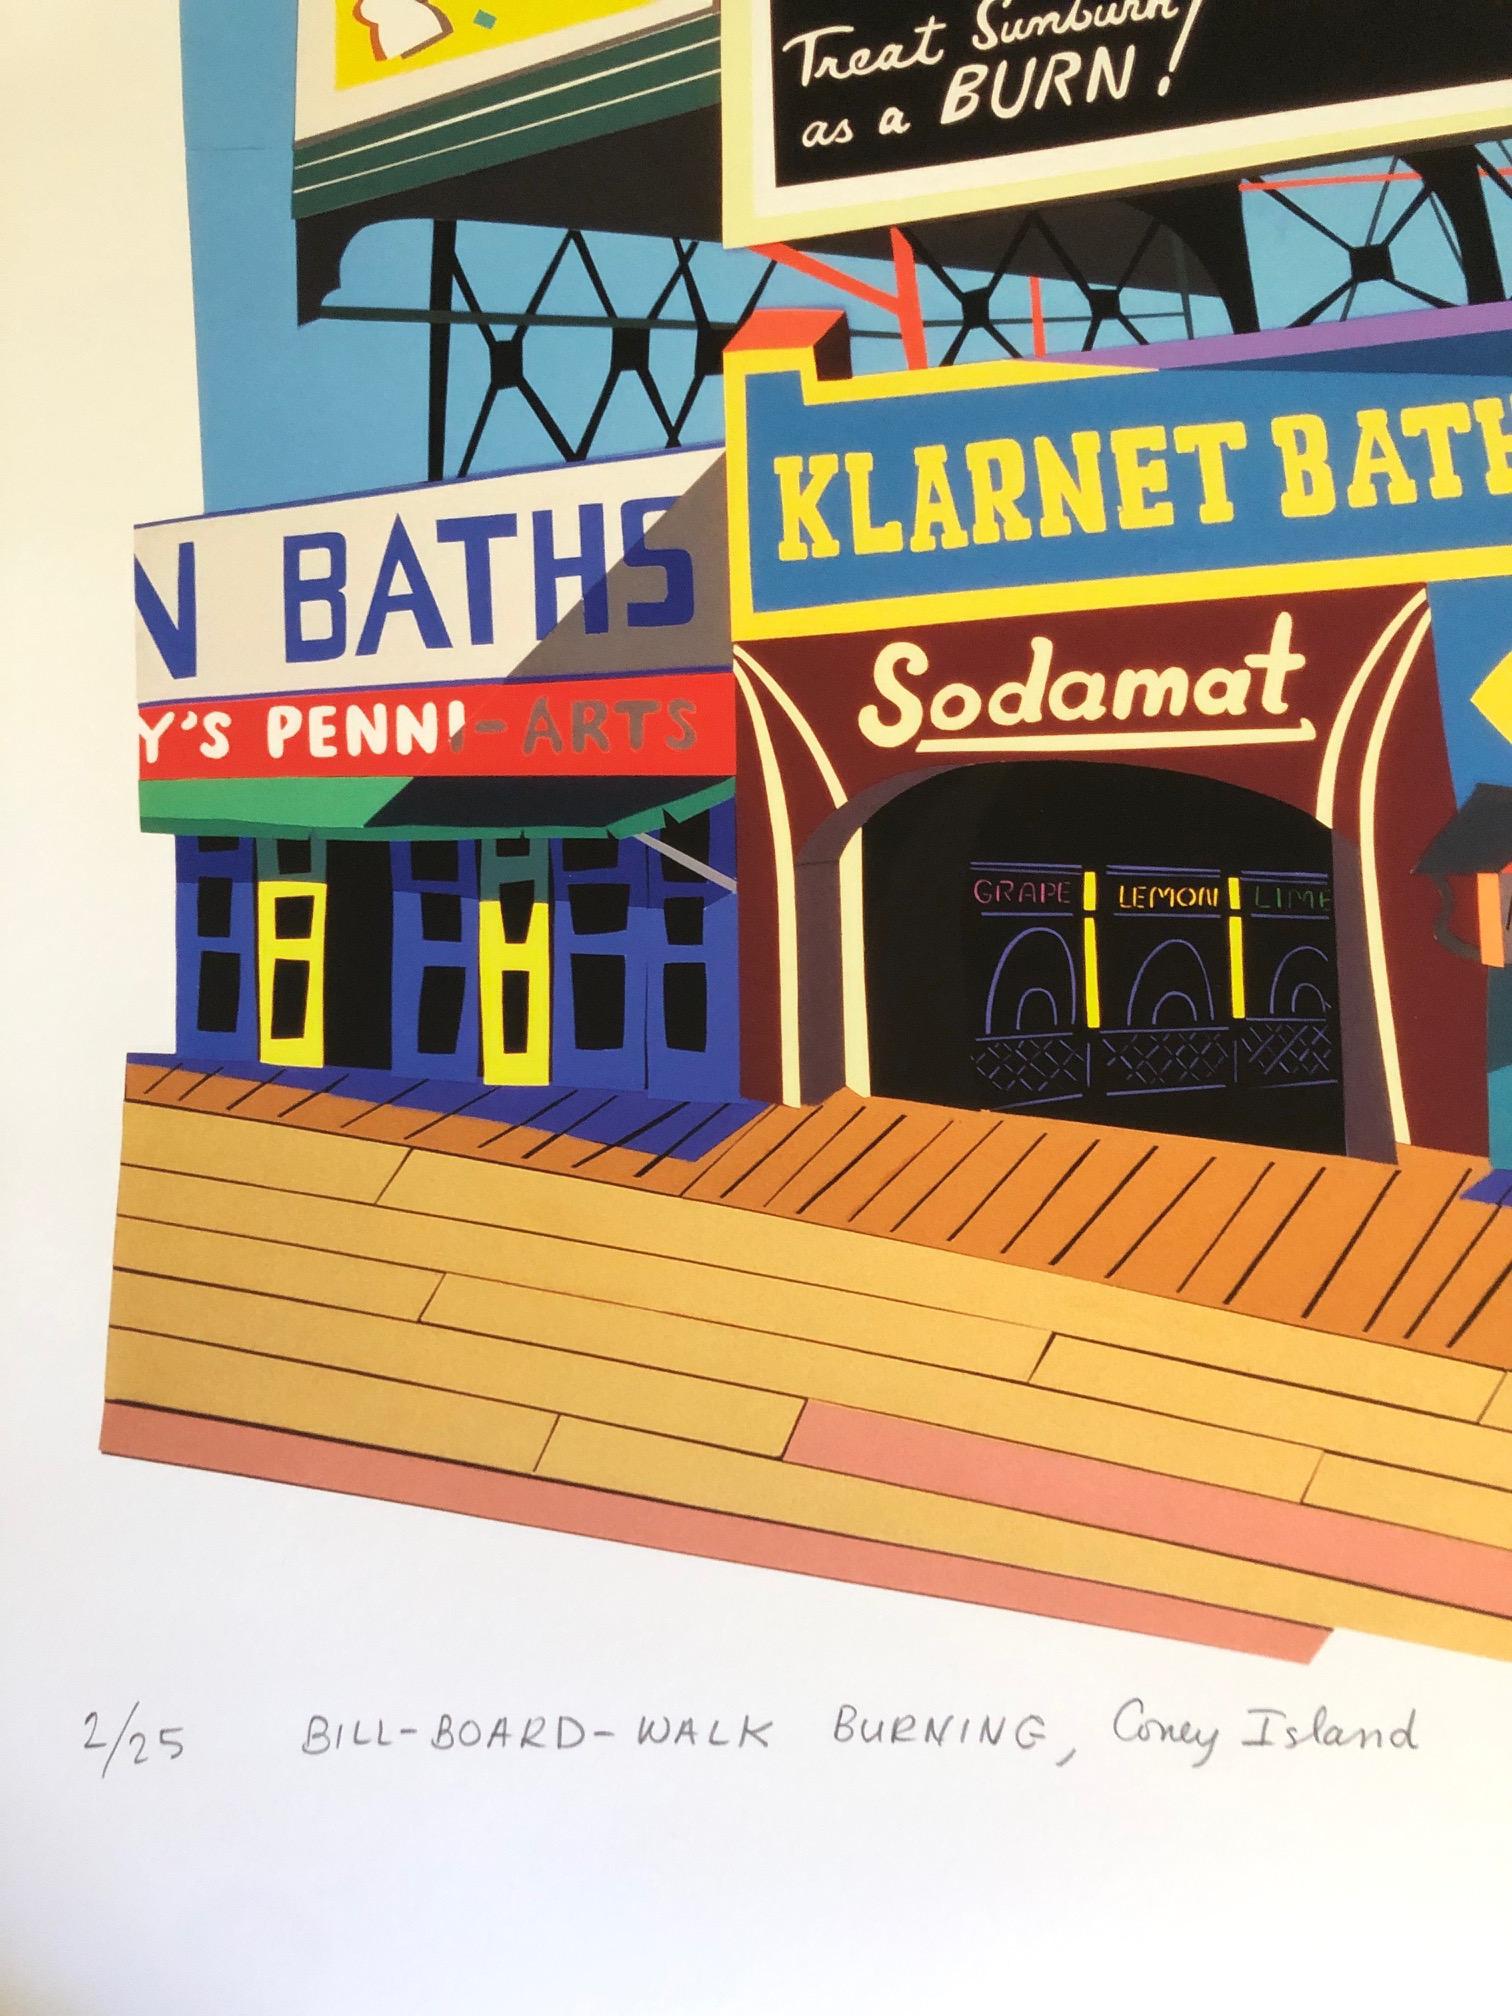 Bill Bill-Board-Walk, Burning/Coney Island, leuchtende Farben, Populärkultur, New York (Blau), Landscape Print, von Philomena Marano